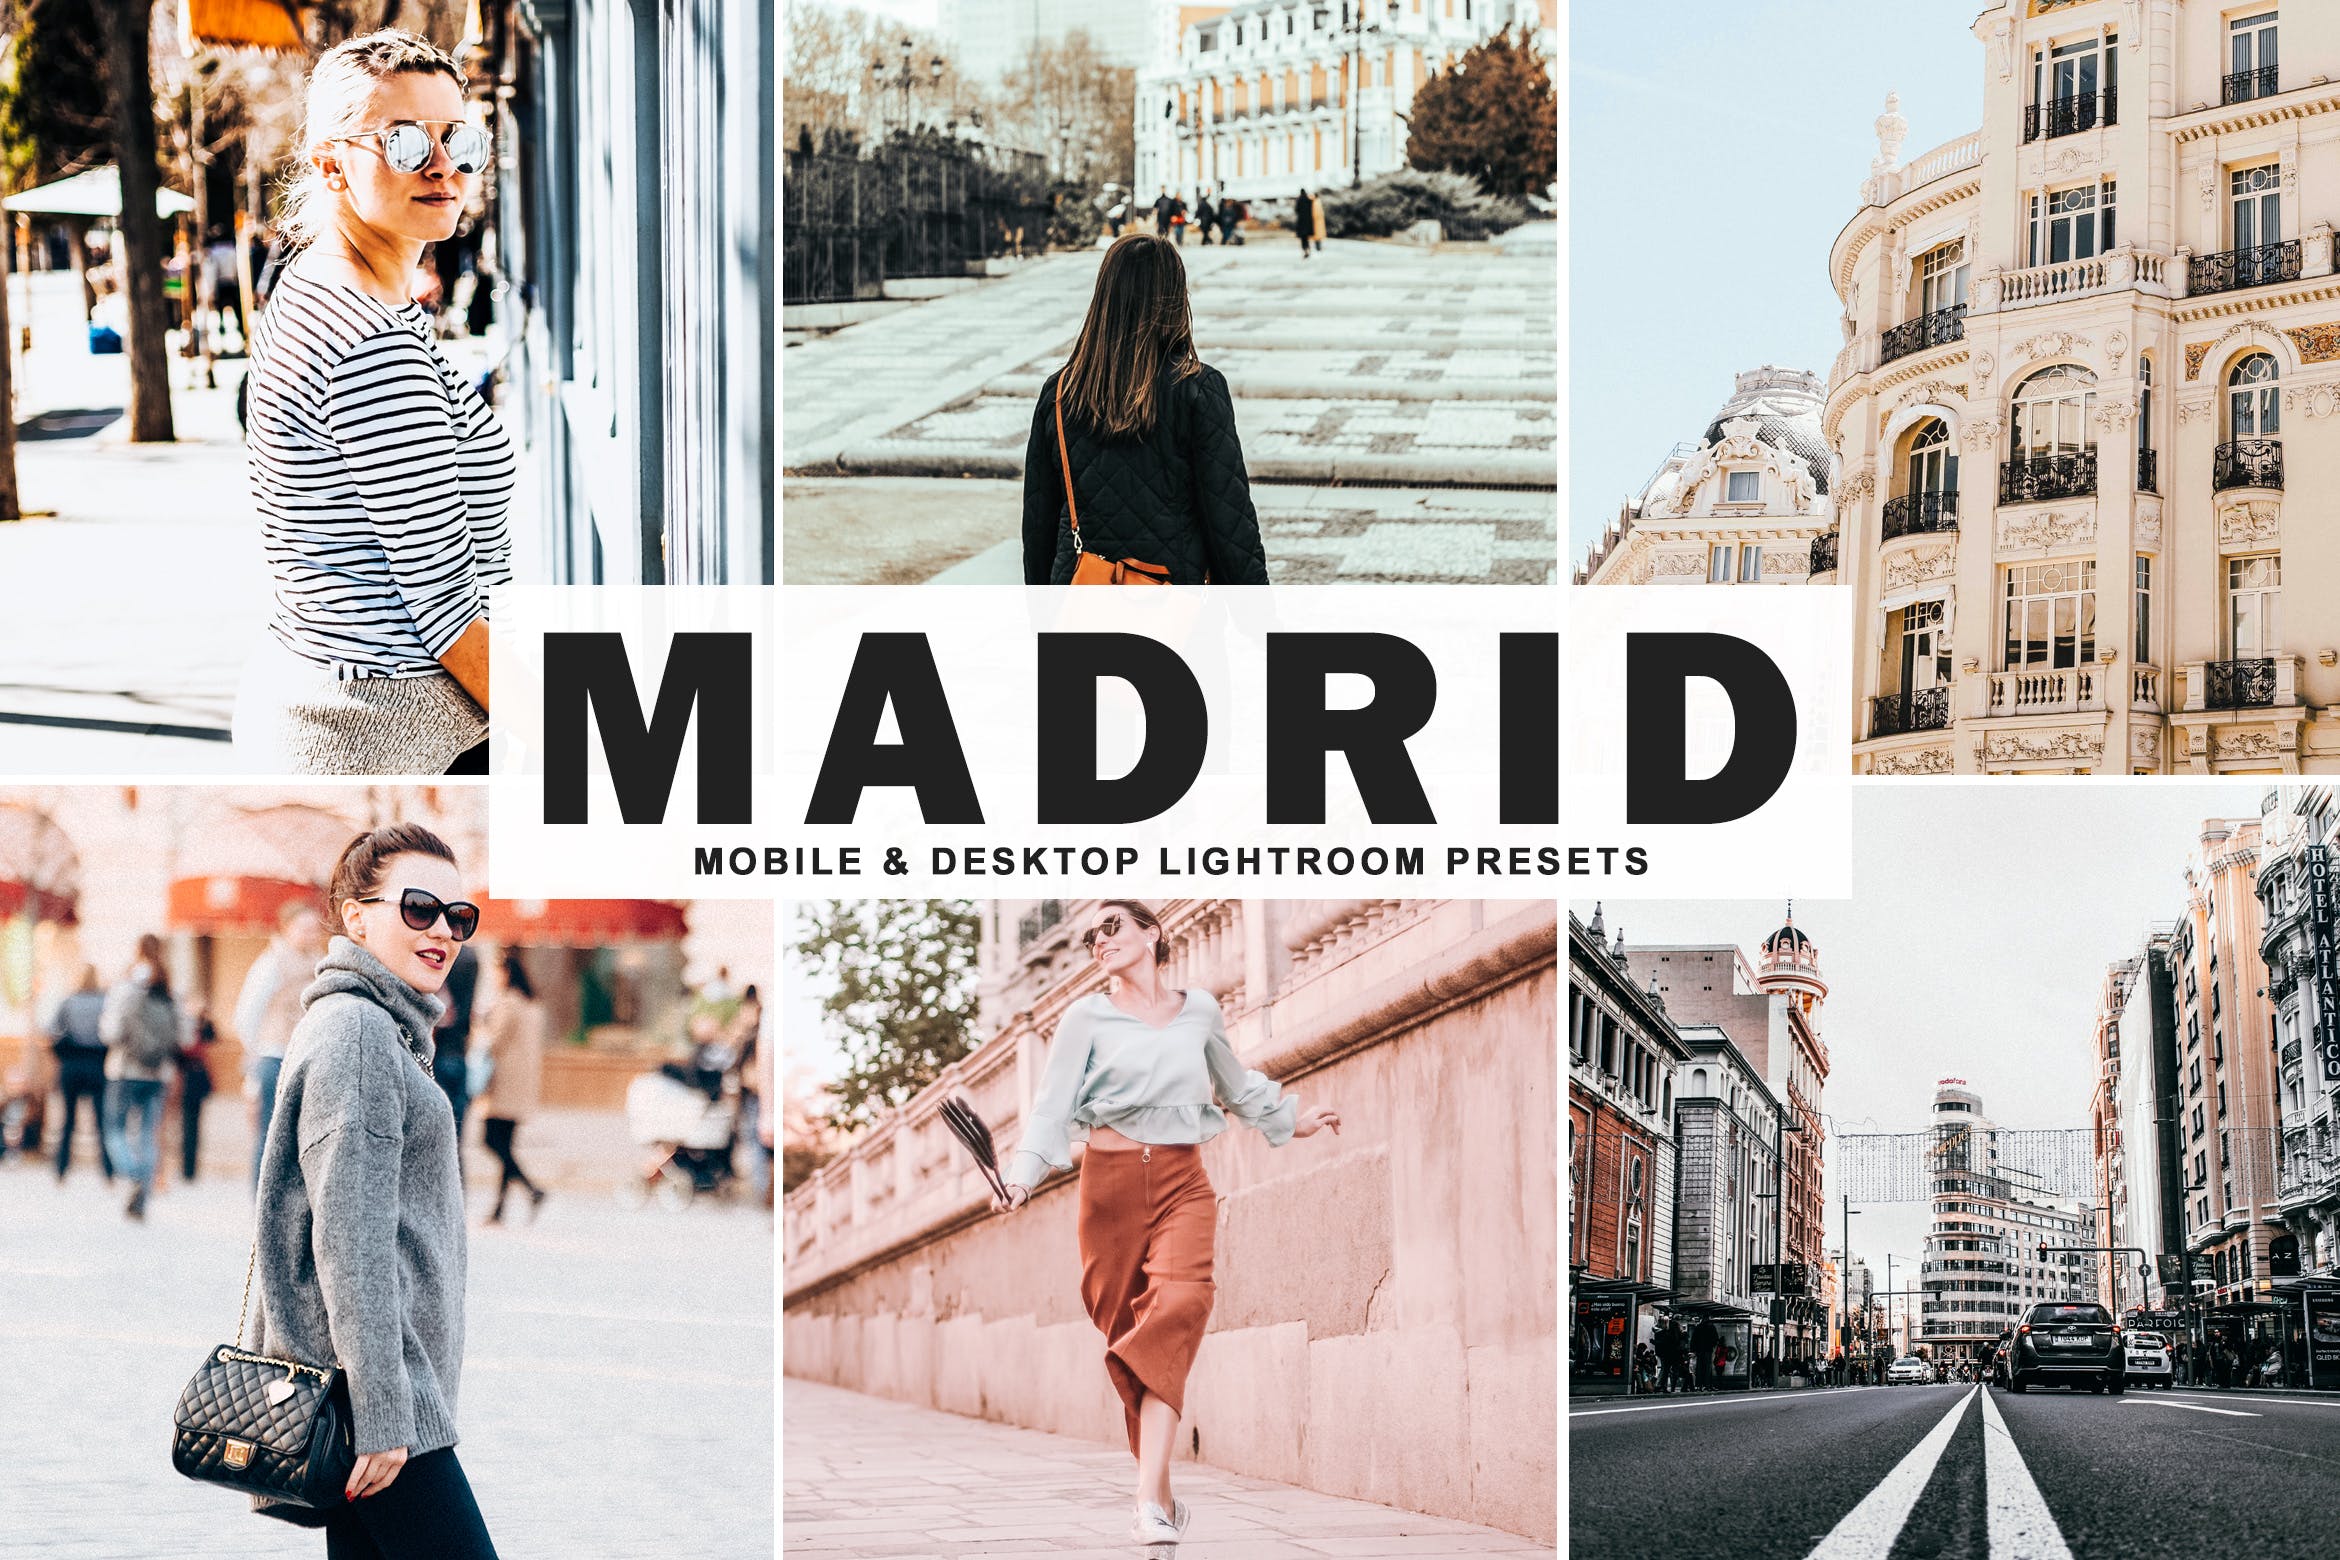 街拍时装摄影必备的调色滤镜第一素材精选LR预设 Madrid Mobile & Desktop Lightroom Presets插图